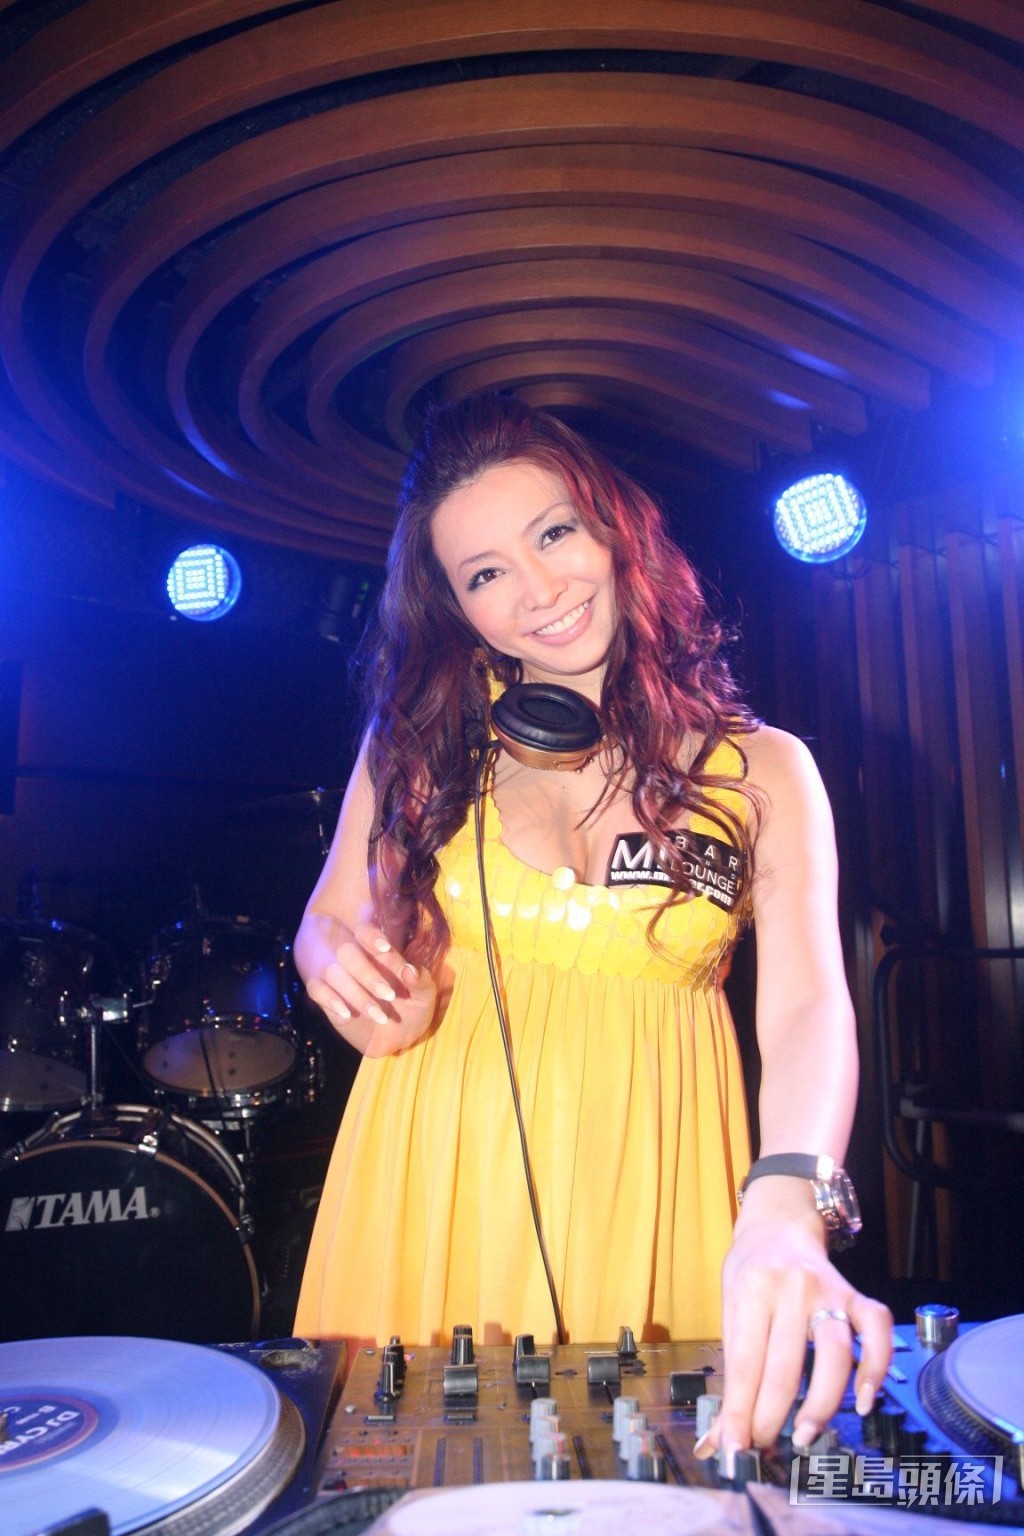 椋名凛在日本出道，2003年被星探发掘，成为日本潮流杂志模特儿、演员及DJ。